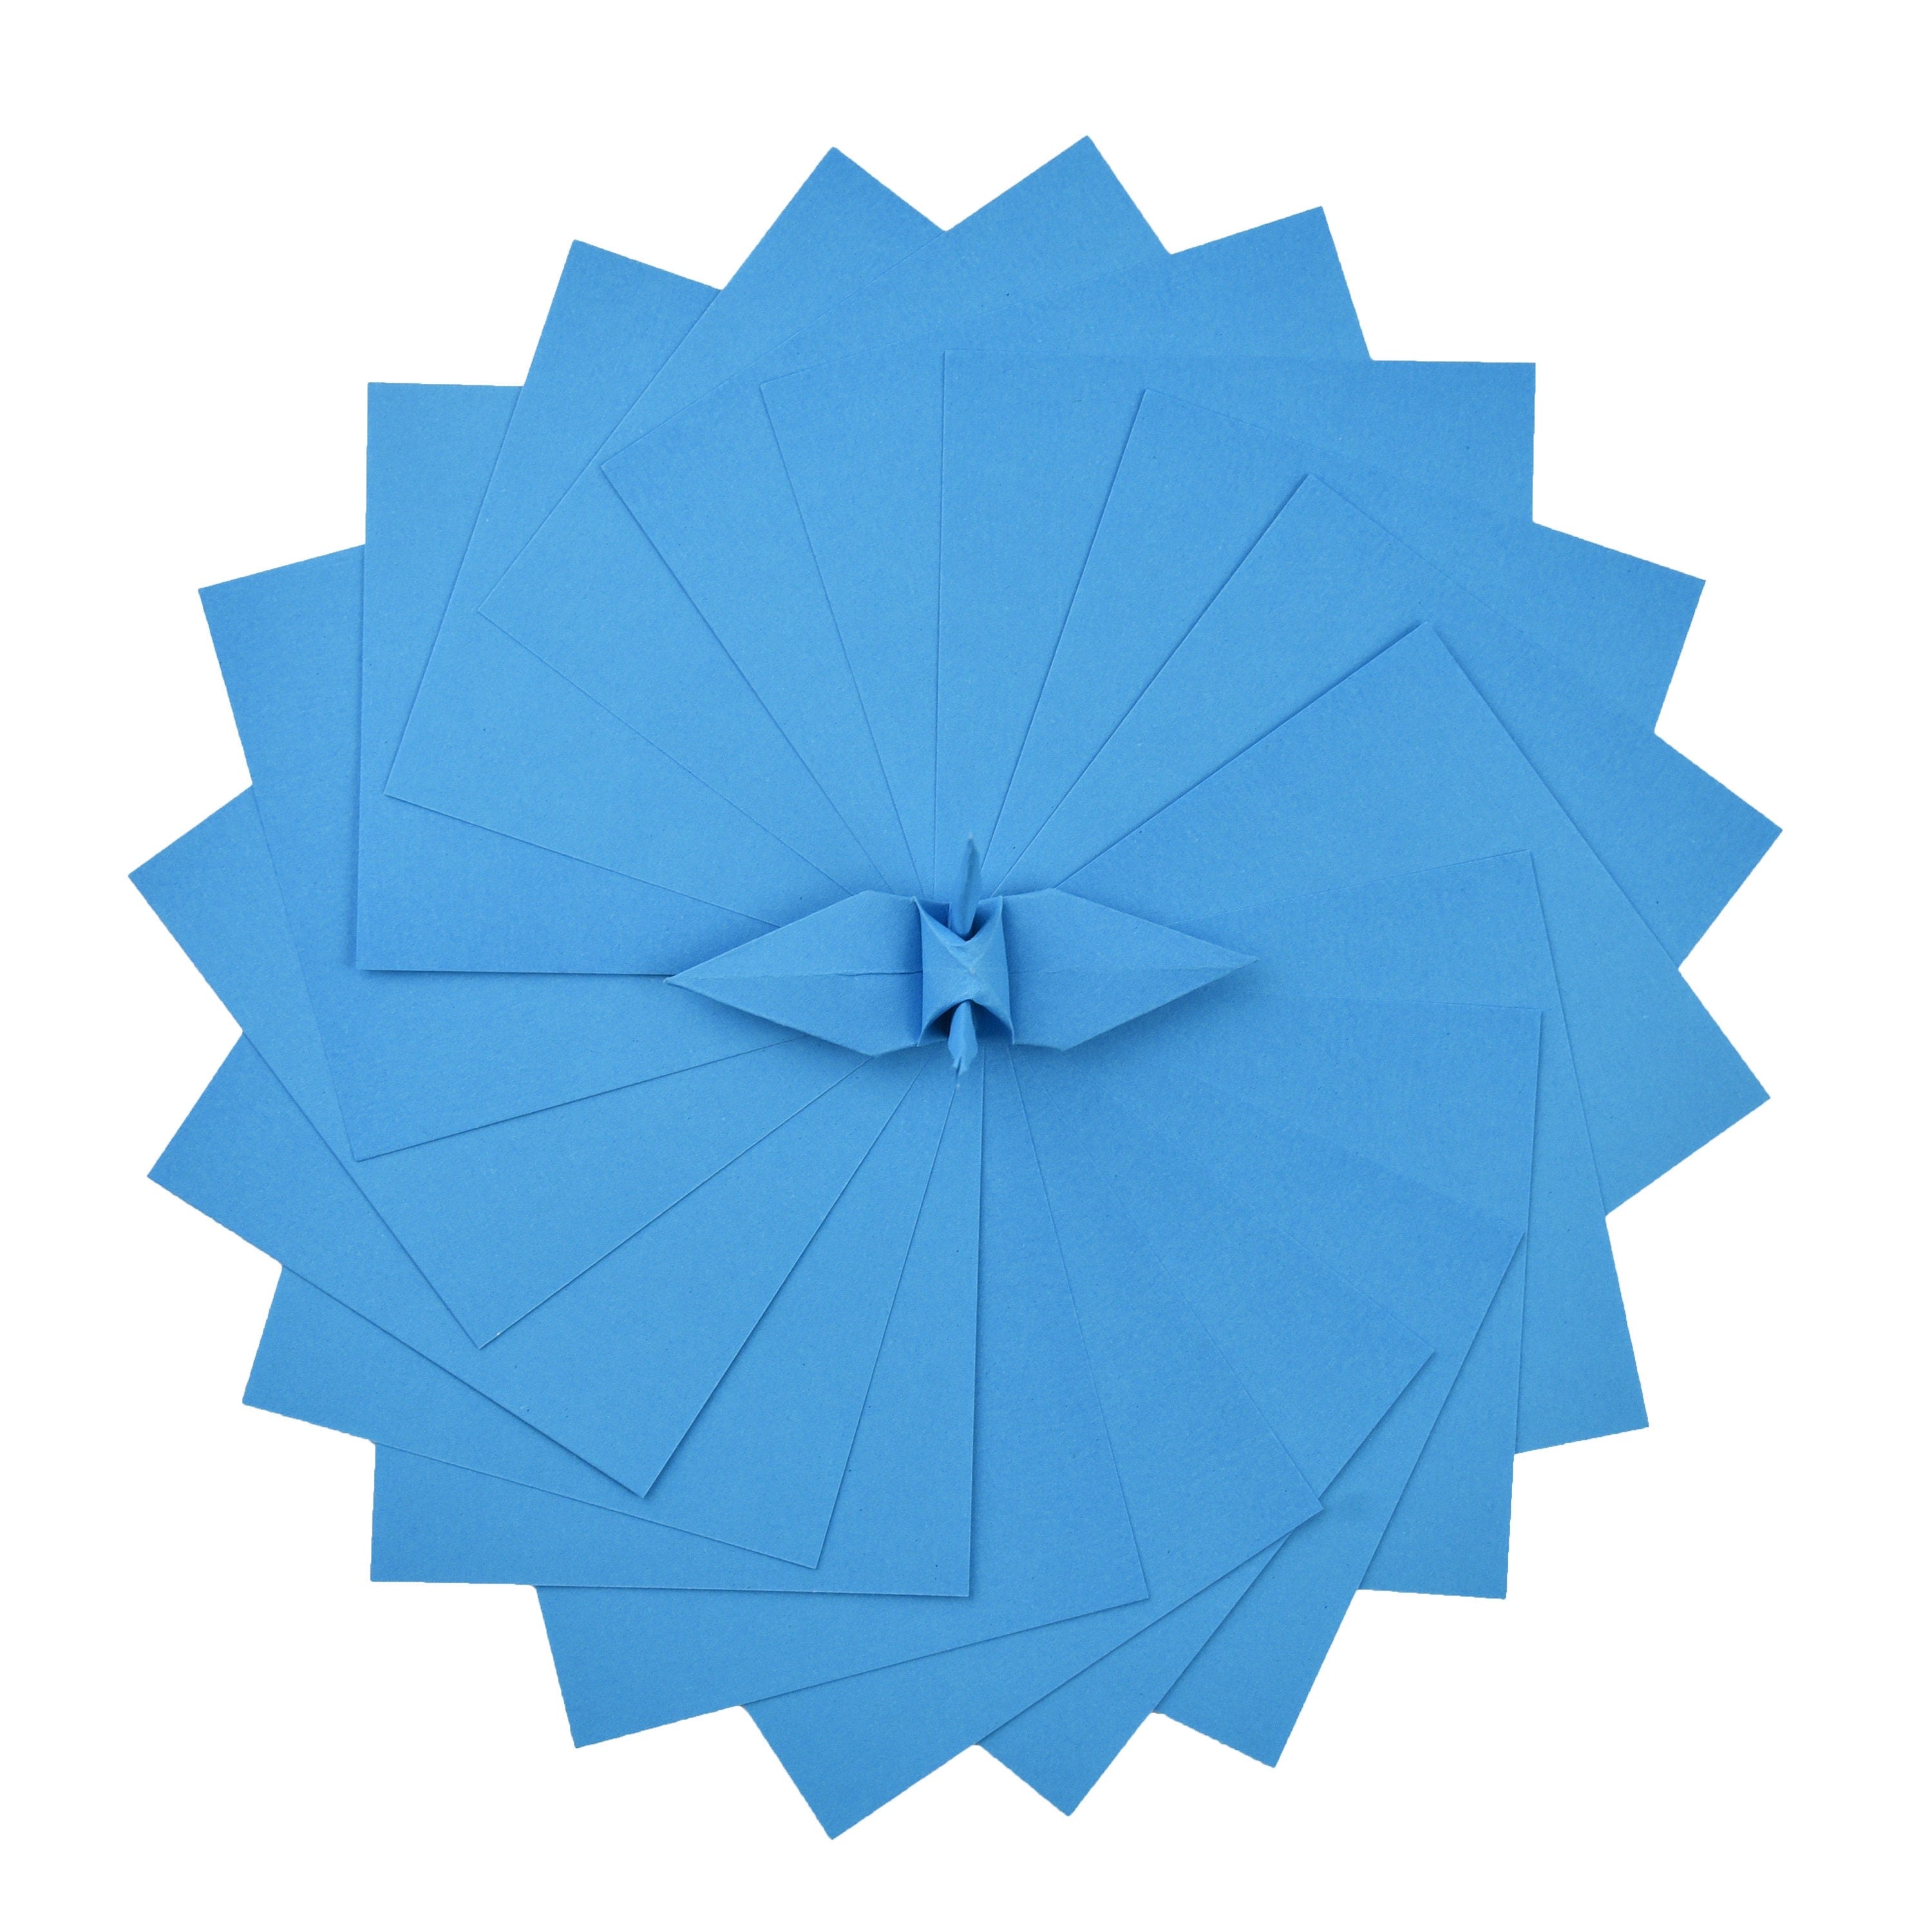 100 fogli di carta origami - 3x3 pollici - Confezione di carta quadrata per piegare, gru origami e decorazioni - S18